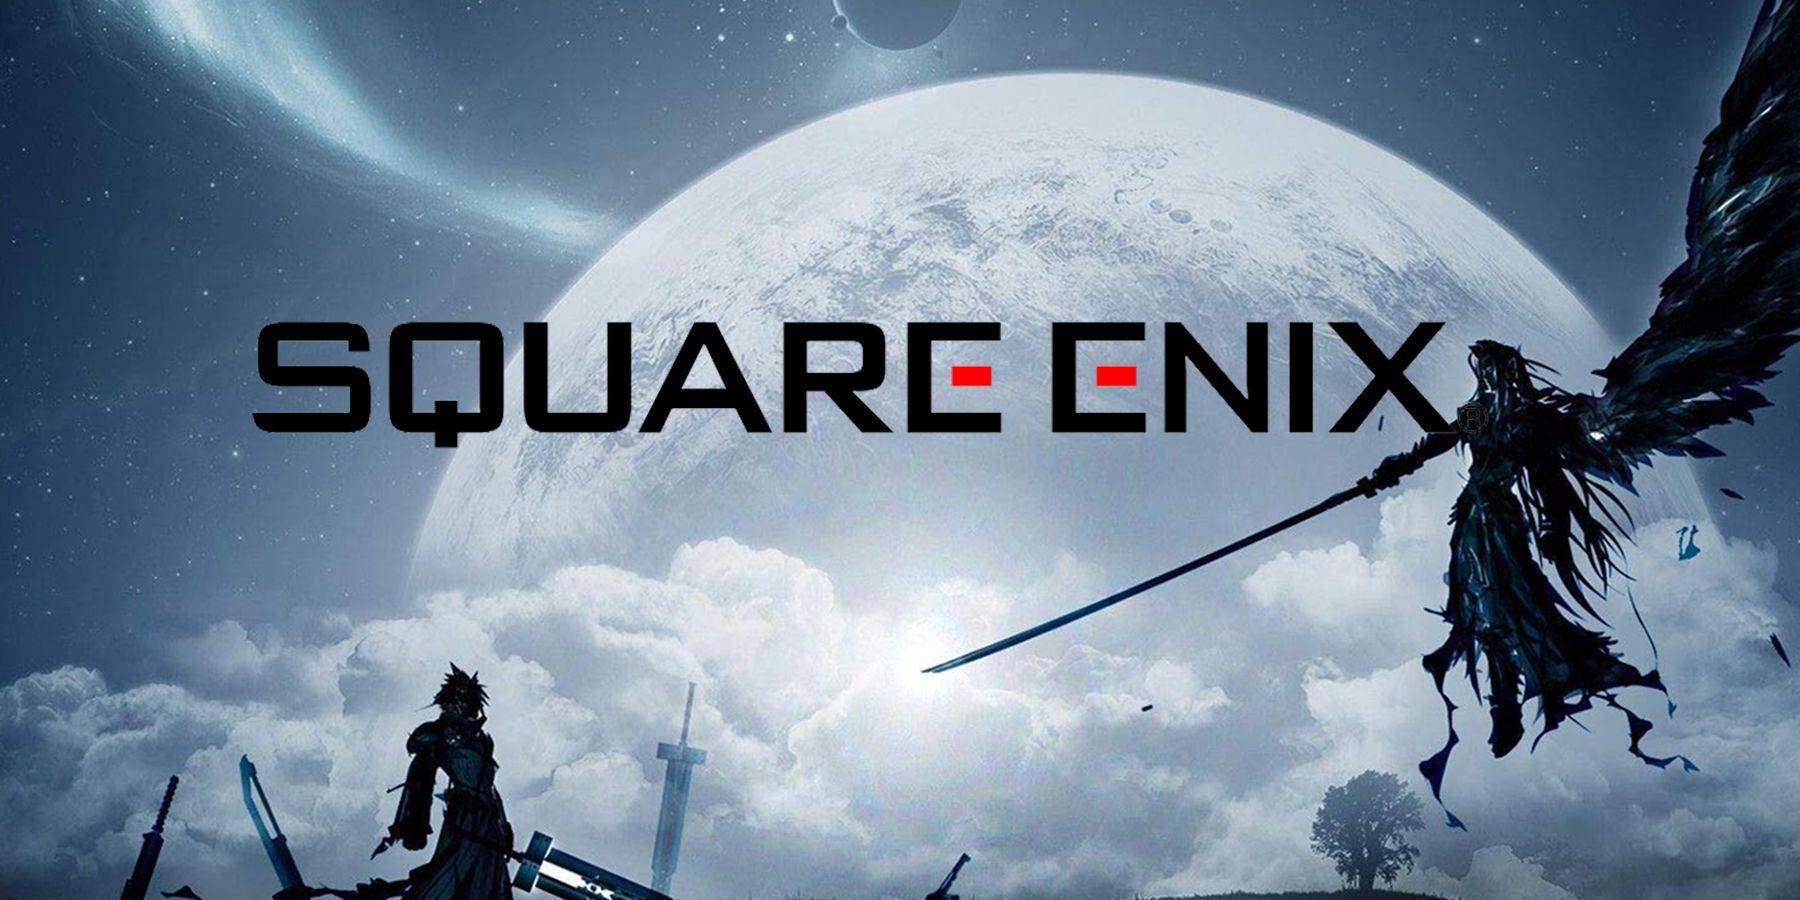 As vendas da Square Enix caíram de acordo com as finanças da empresa